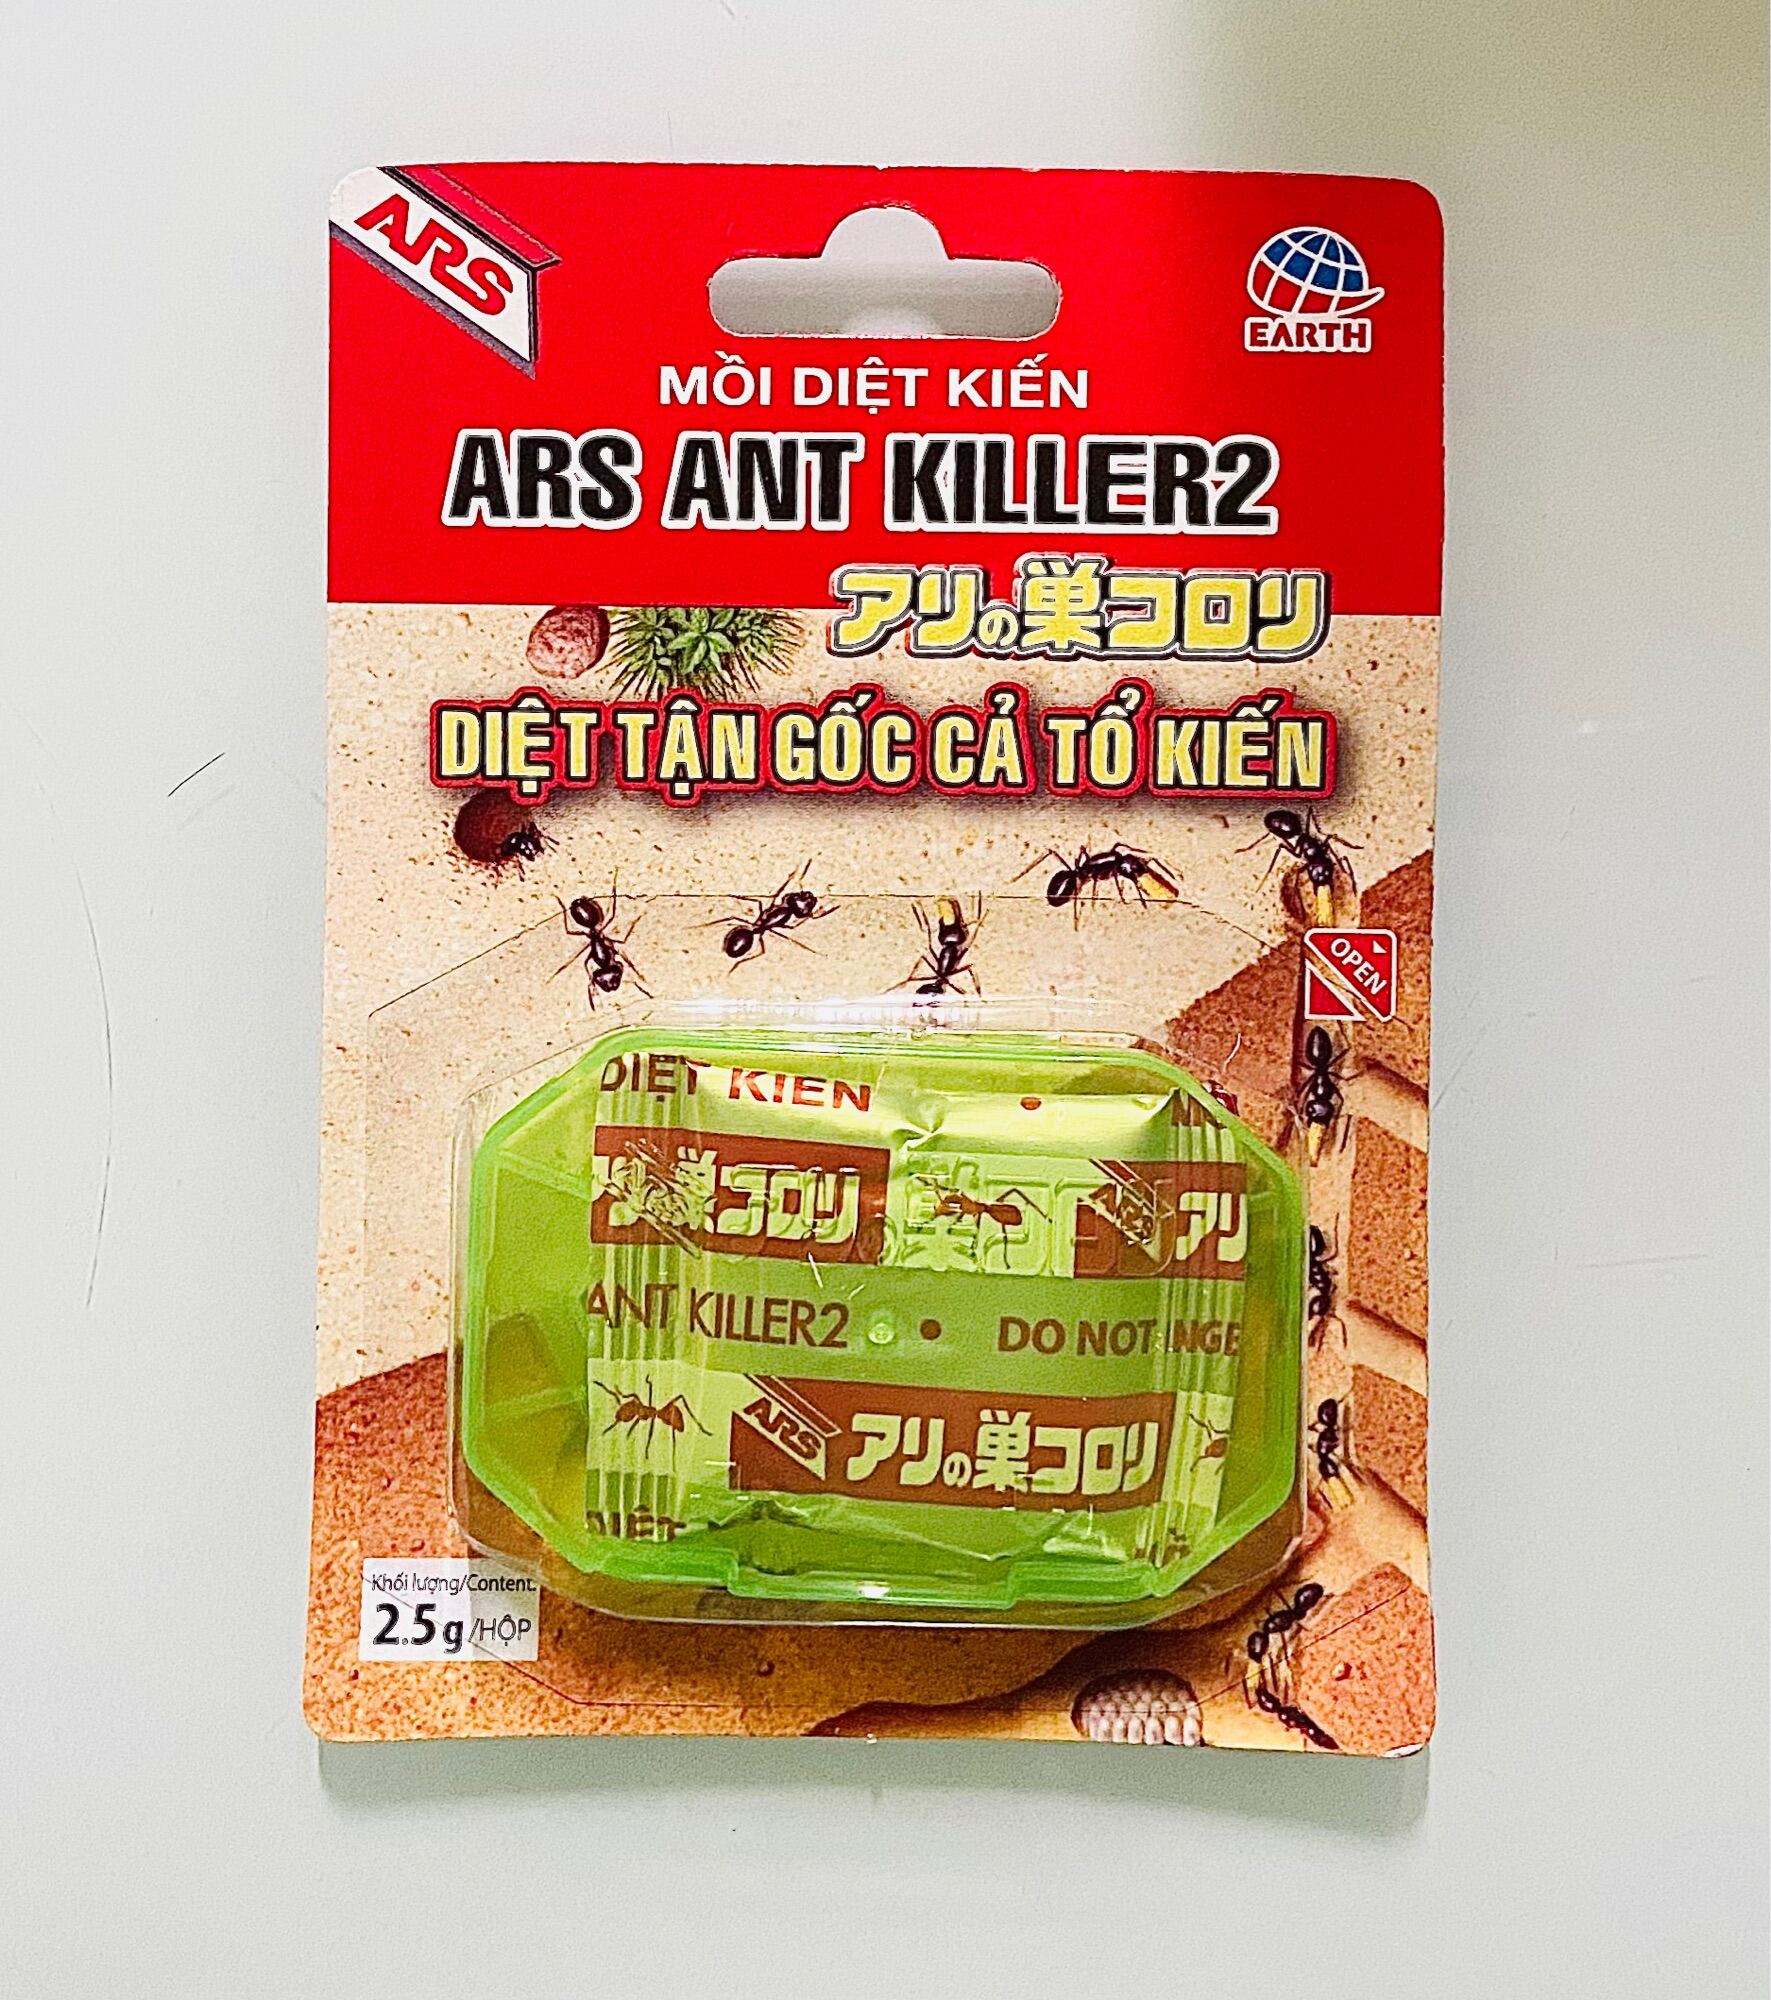 Mồi diệt kiến ars ant killer 2 diệt kiến tận gốc bẫy dẫn dụ kiến hàng nhập - ảnh sản phẩm 1